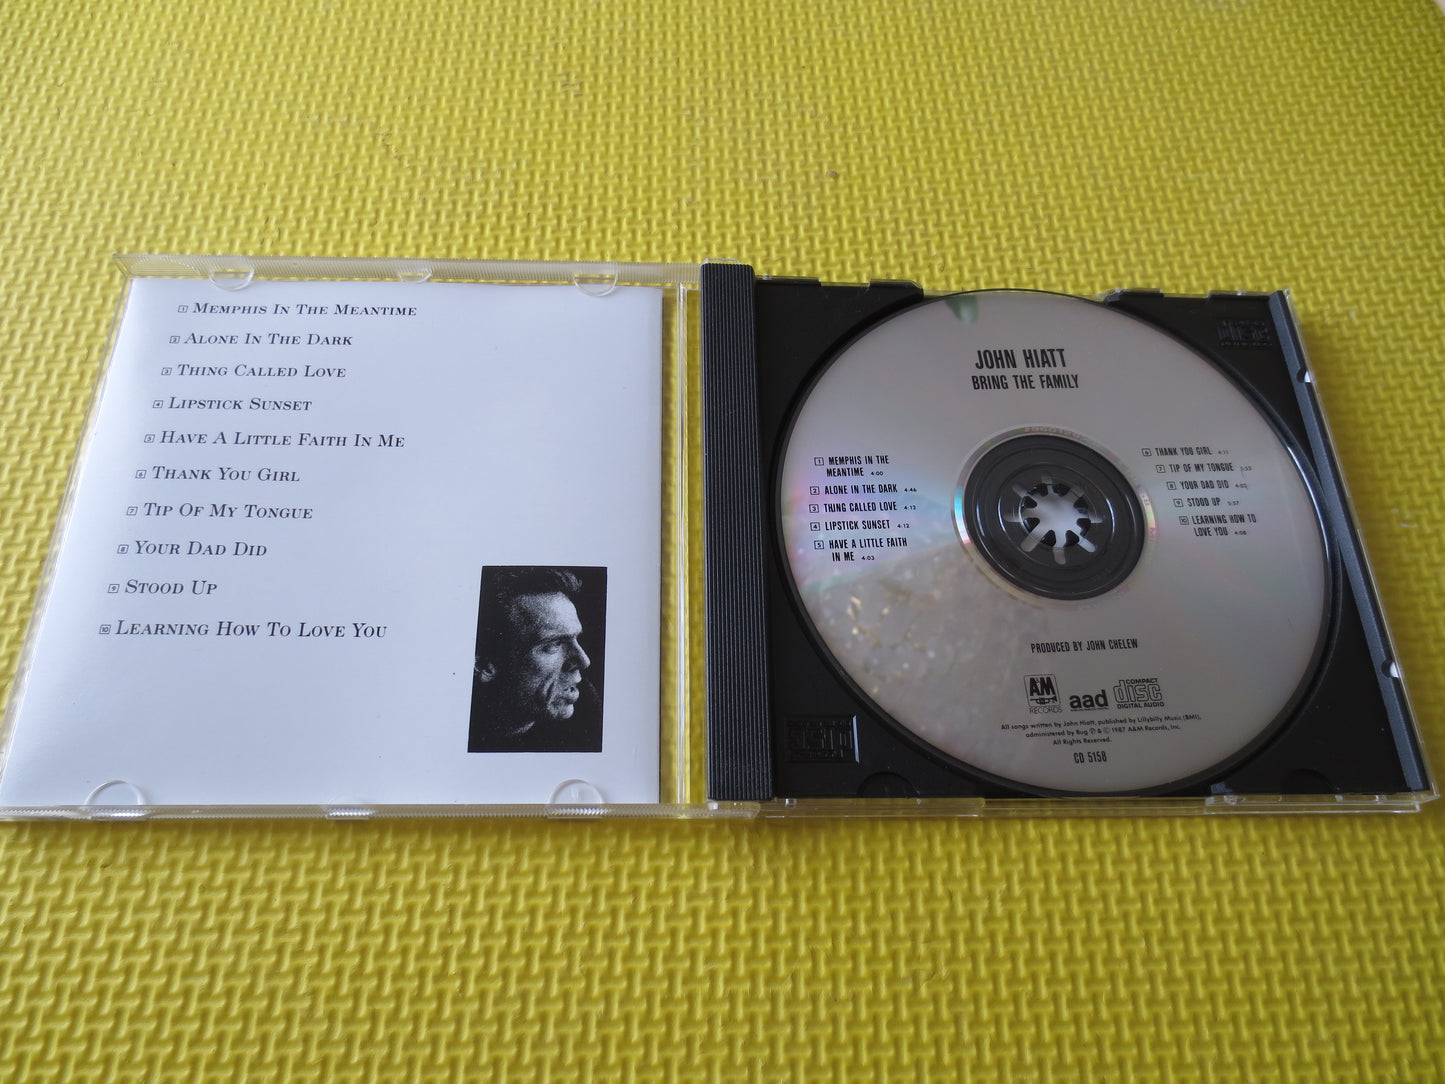 JOHN HIATT, Bring The FAMILY, John Hiatt Cd, John Hiatt Lp, Rock Album, Classic Rock Cd, Classic Rock Cds, 1987 Compact Disc